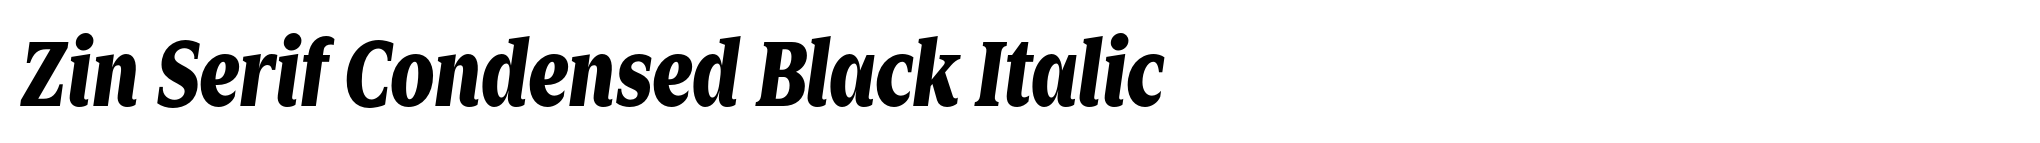 Zin Serif Condensed Black Italic image